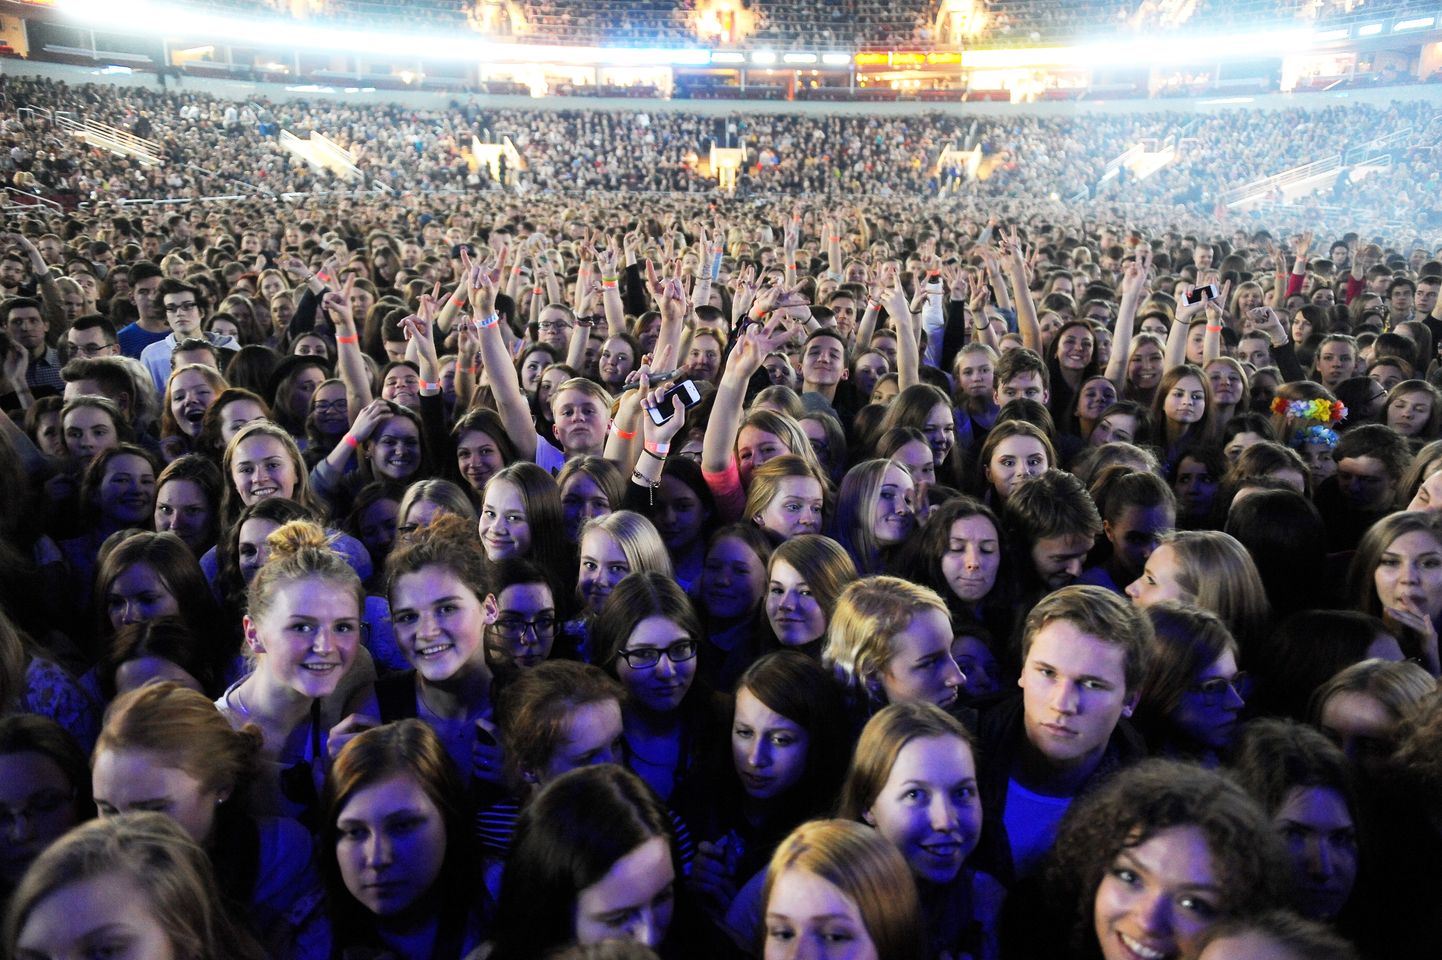 Skatītāji dziedātāja un komponista Eda Šīrana (Ed Sheeran) koncertā "Arēnā Rīga". Ilustratīvs attēls.